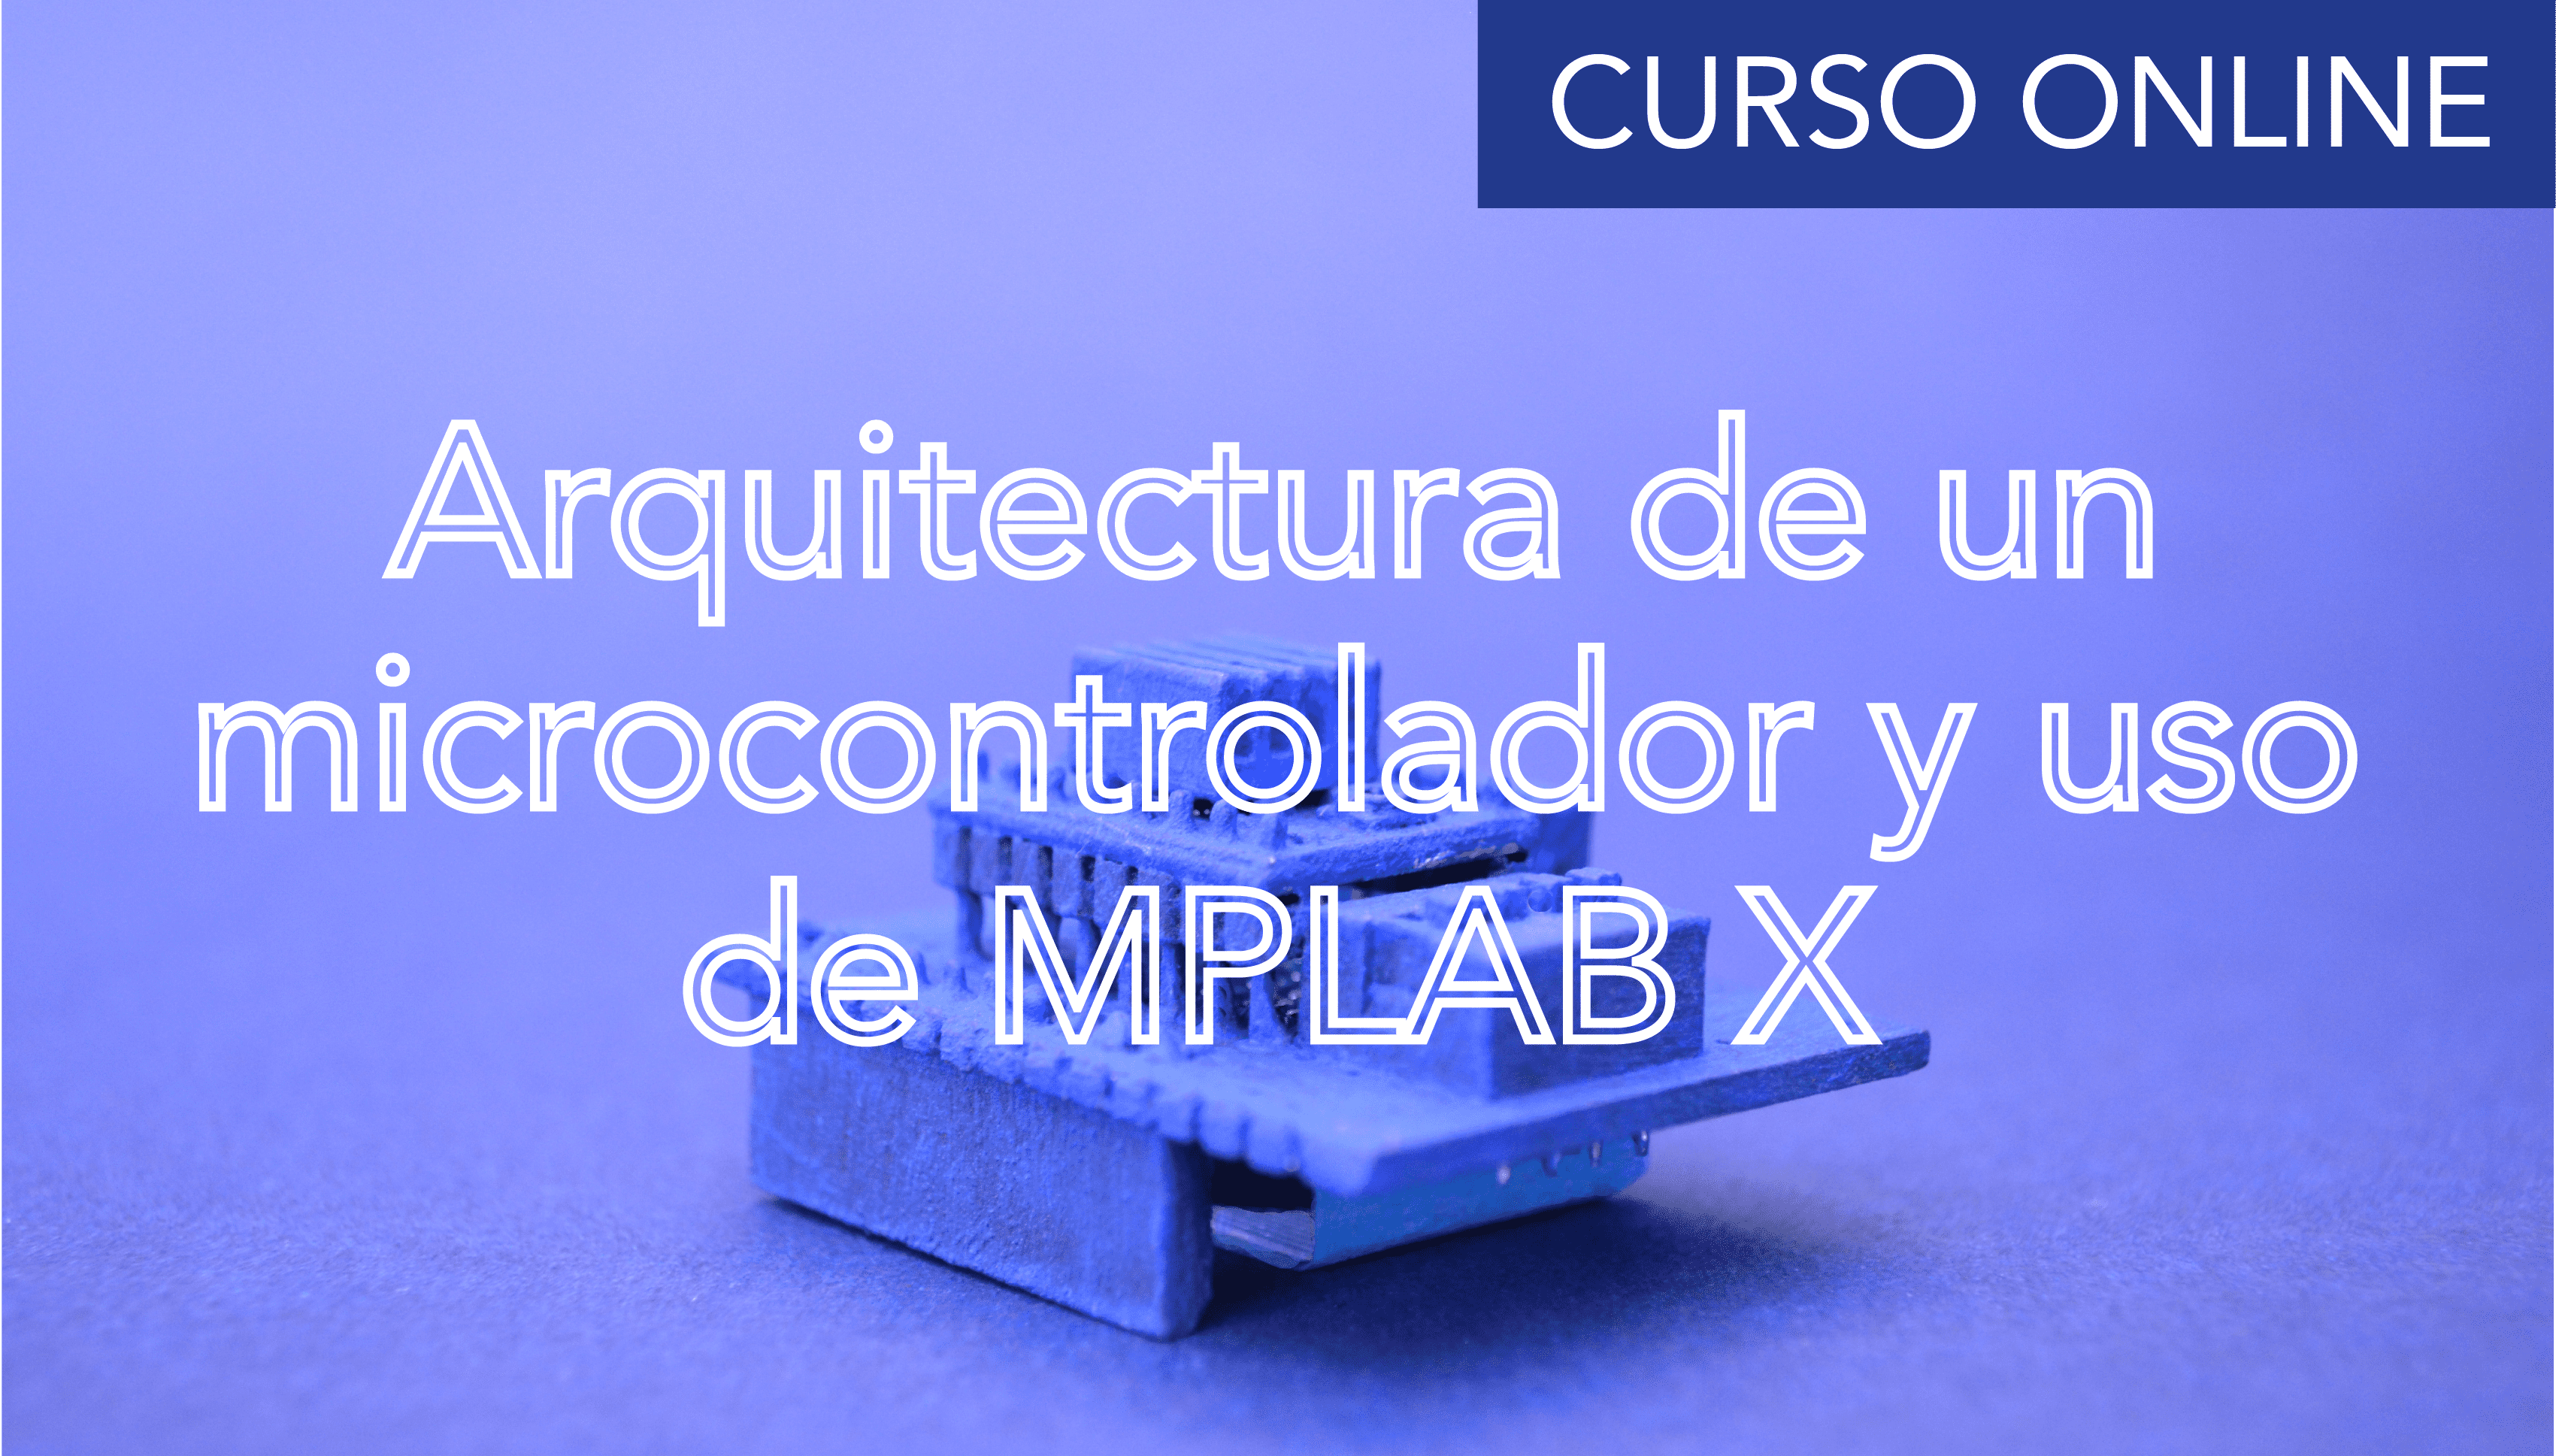 Arquitectura de un microcontrolador PIC y uso de MPLAB X